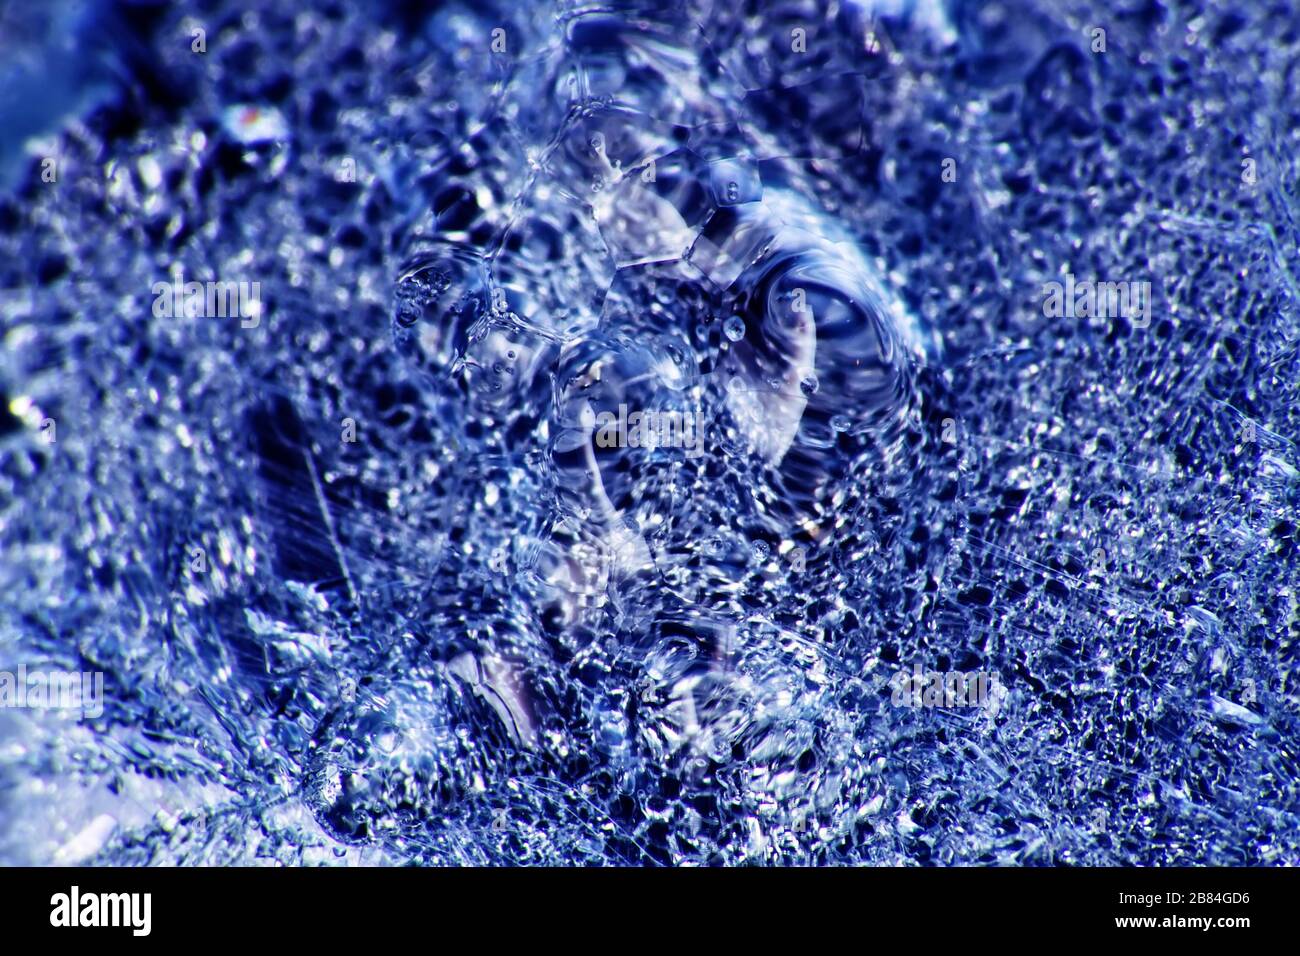 La première et mince couche de glace sur une flaque d'eau transparente et délicate Banque D'Images